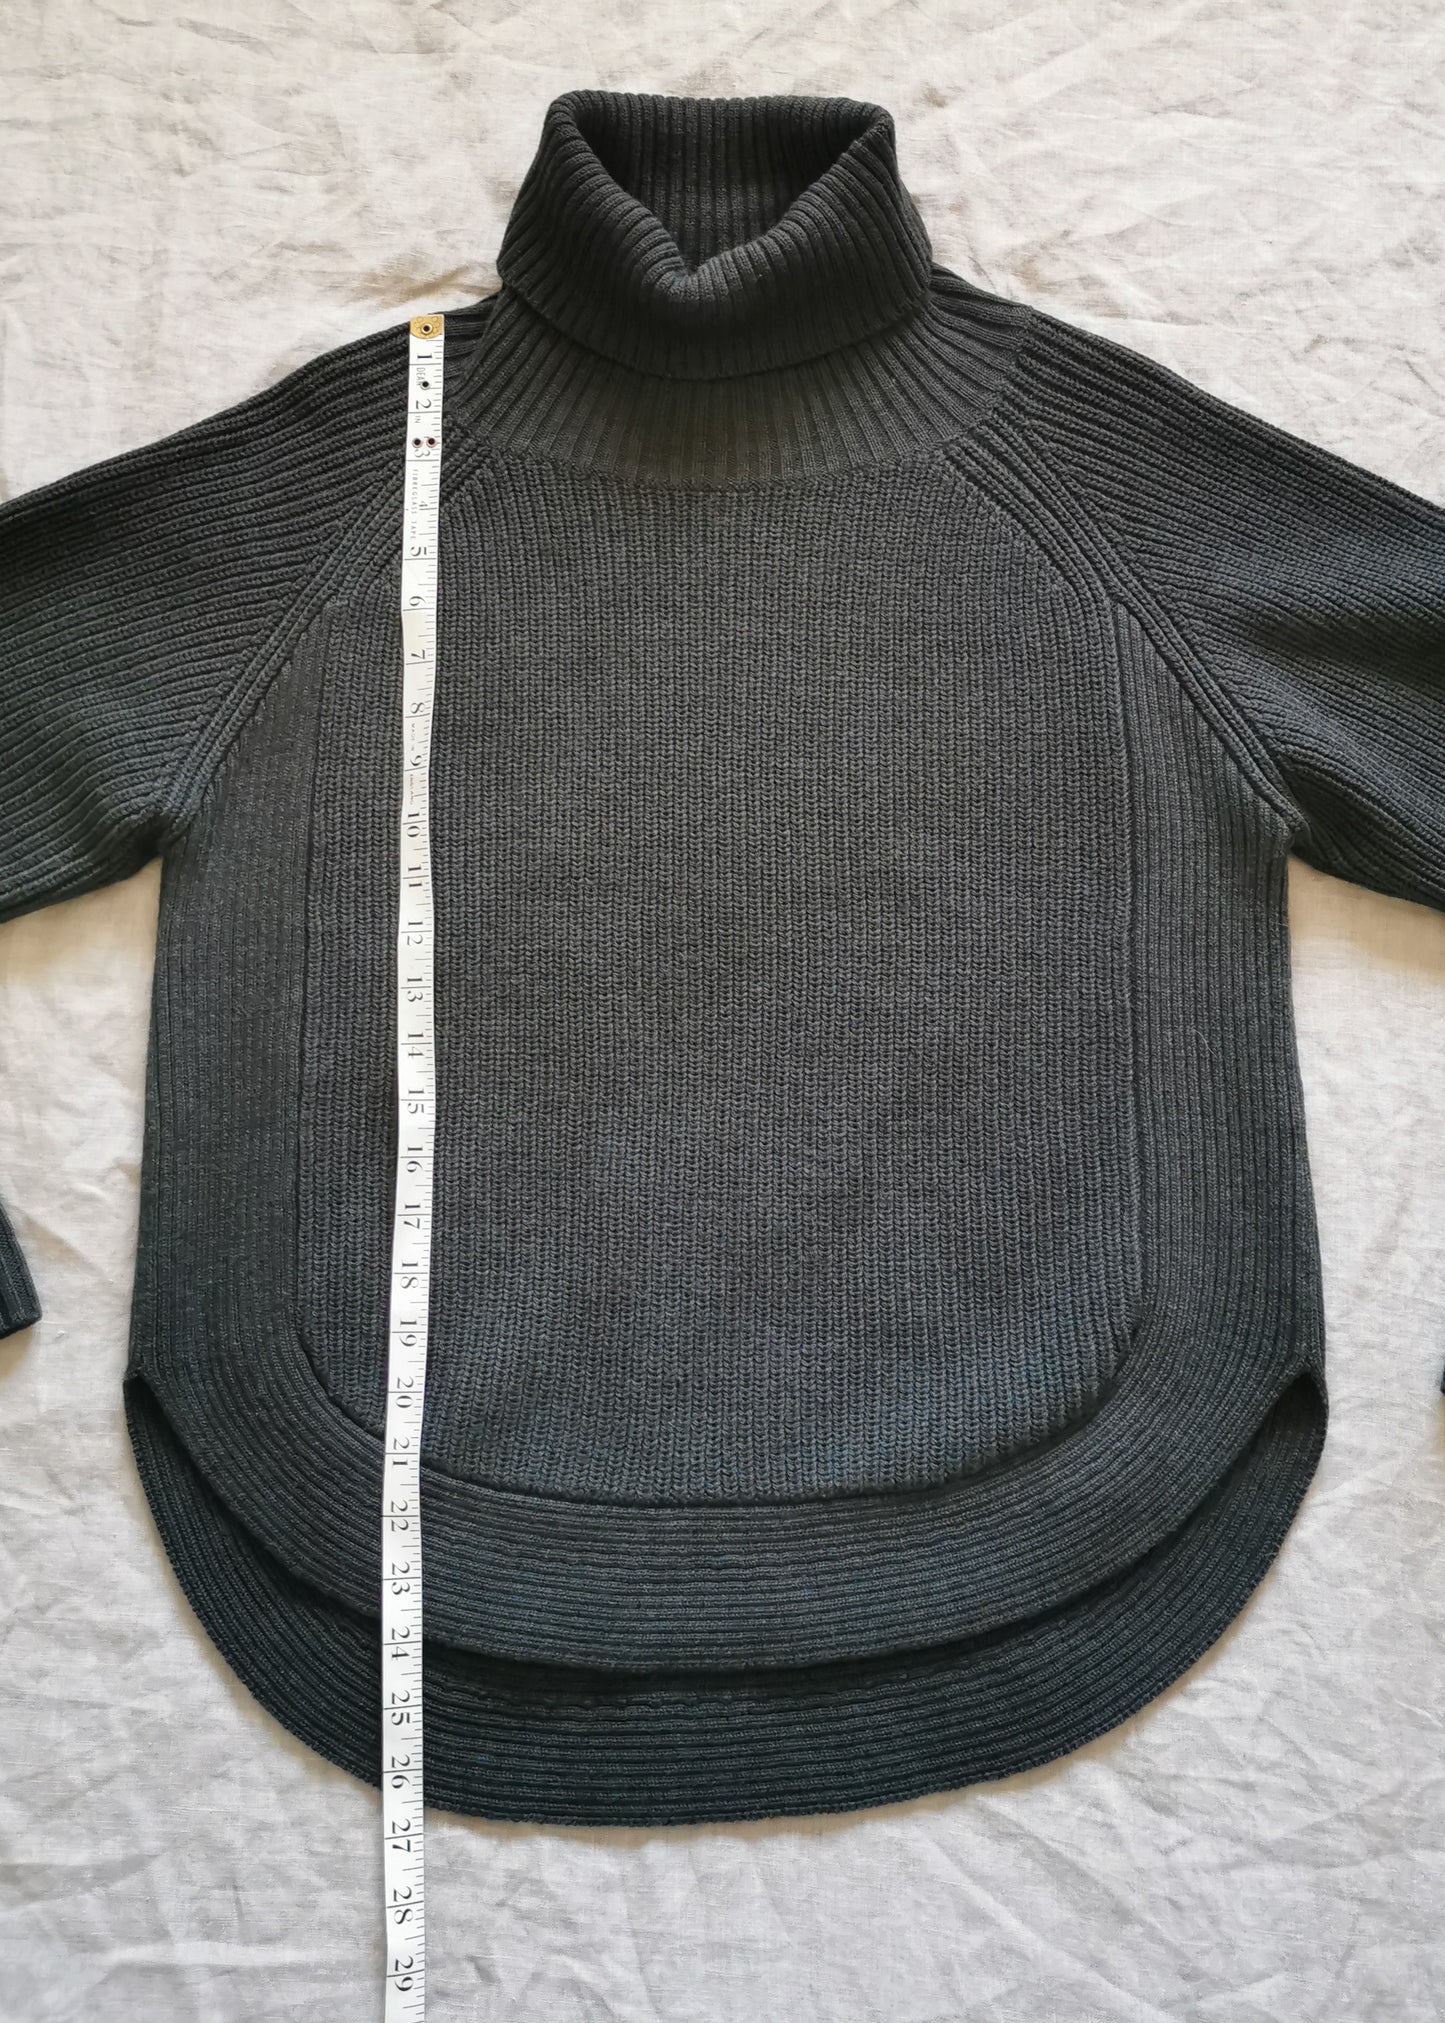 Wilfred Free Merino Wool Sweater (M)